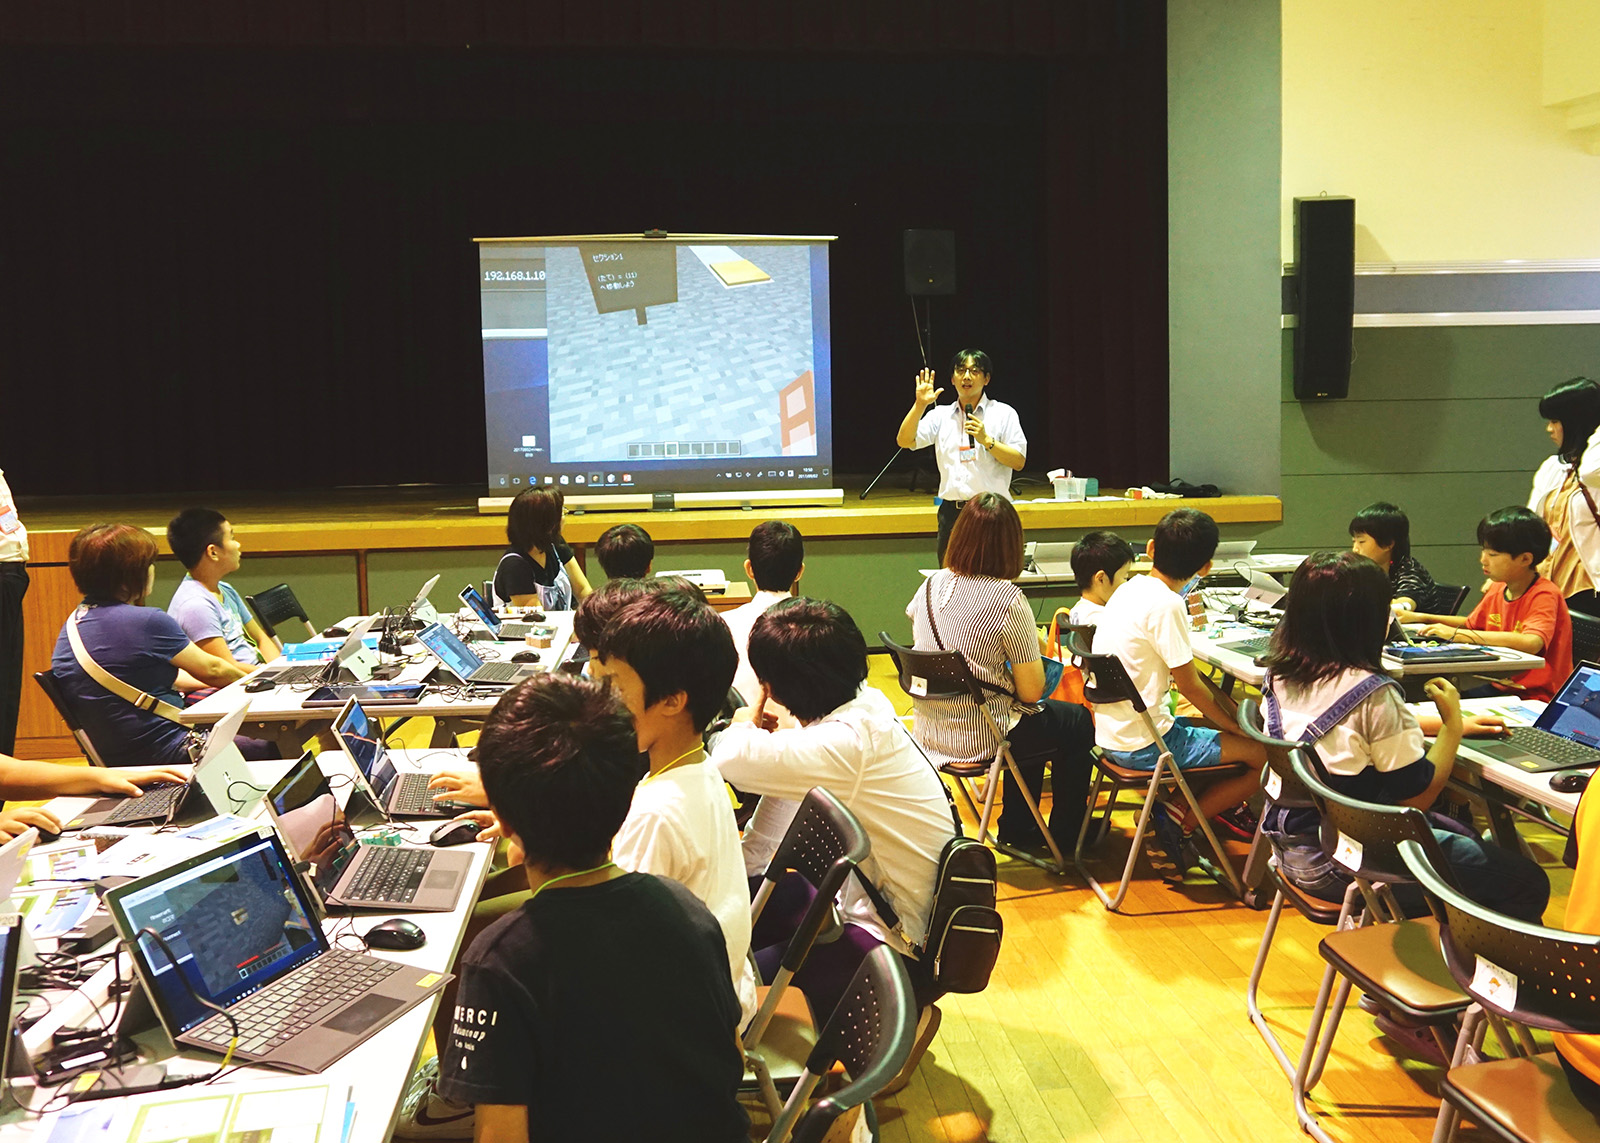 ものづくりゲーム Minecraft を学校の授業で 挑戦する教育者たち